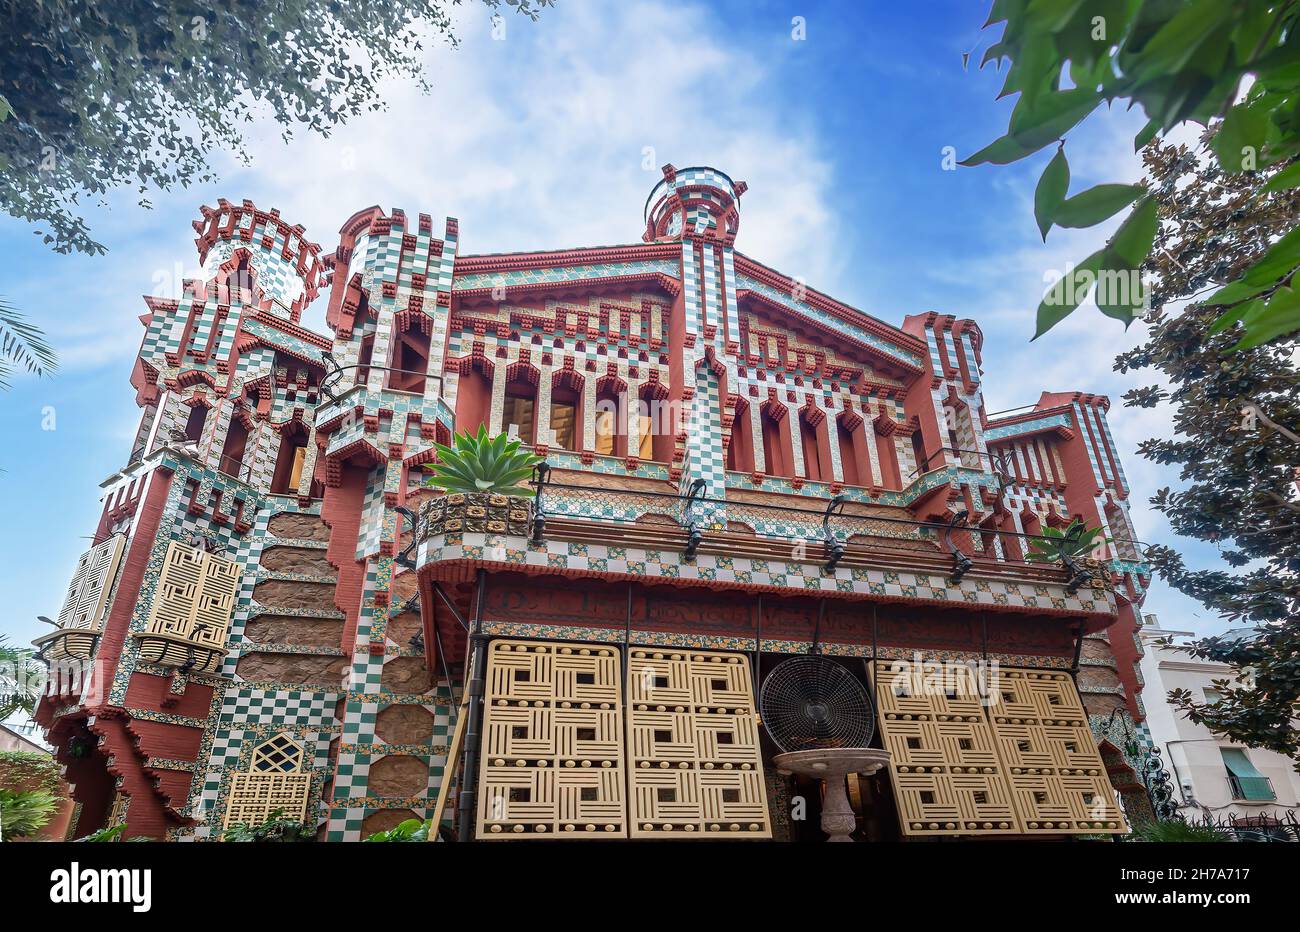 Casa Vicens en Barcelona. Es la primera obra maestra de Antoni Gaudí. Construido entre 1883 y 1885 como verano Foto de stock